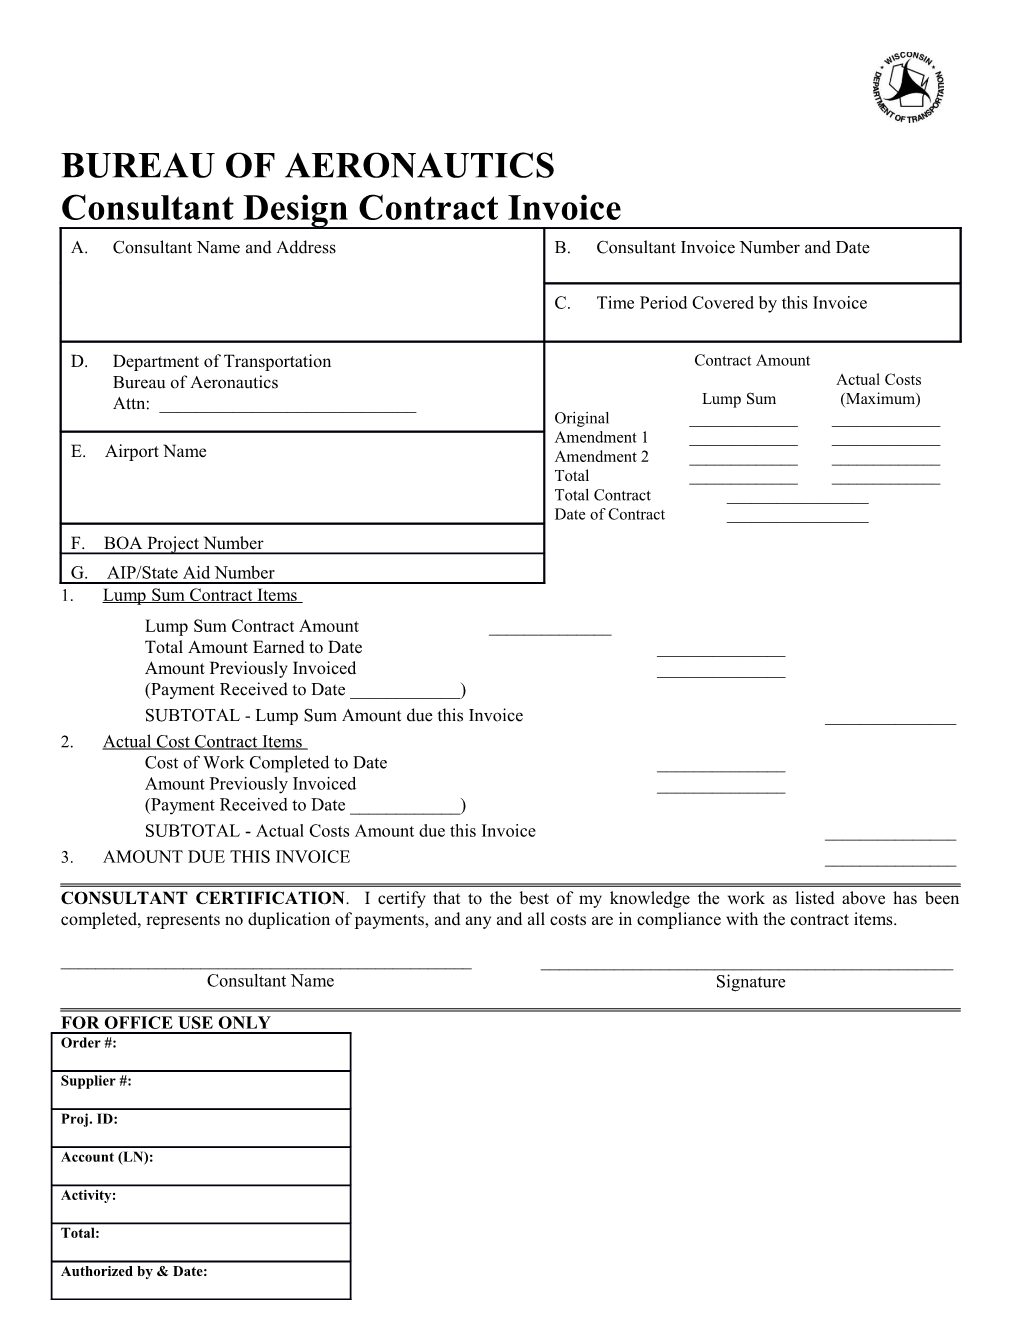 DEV 604A Design Contract Invoice